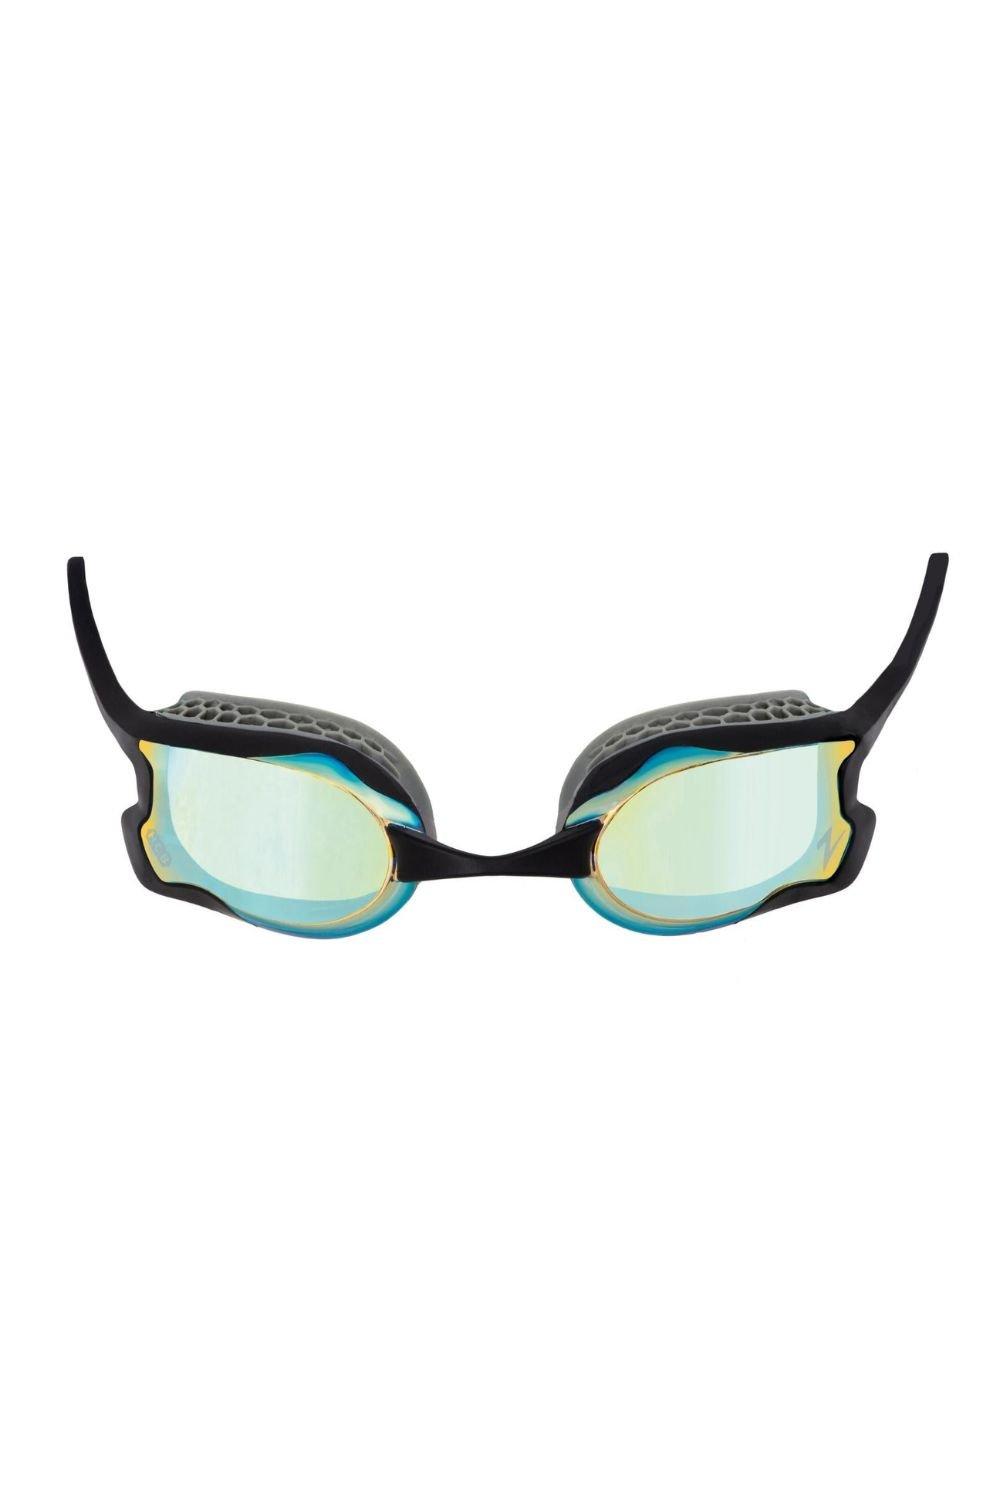 Очки для плавания с зеркалом Raptor HCB Zoggs, серый очки для плавания orca killa 180° goggle черные